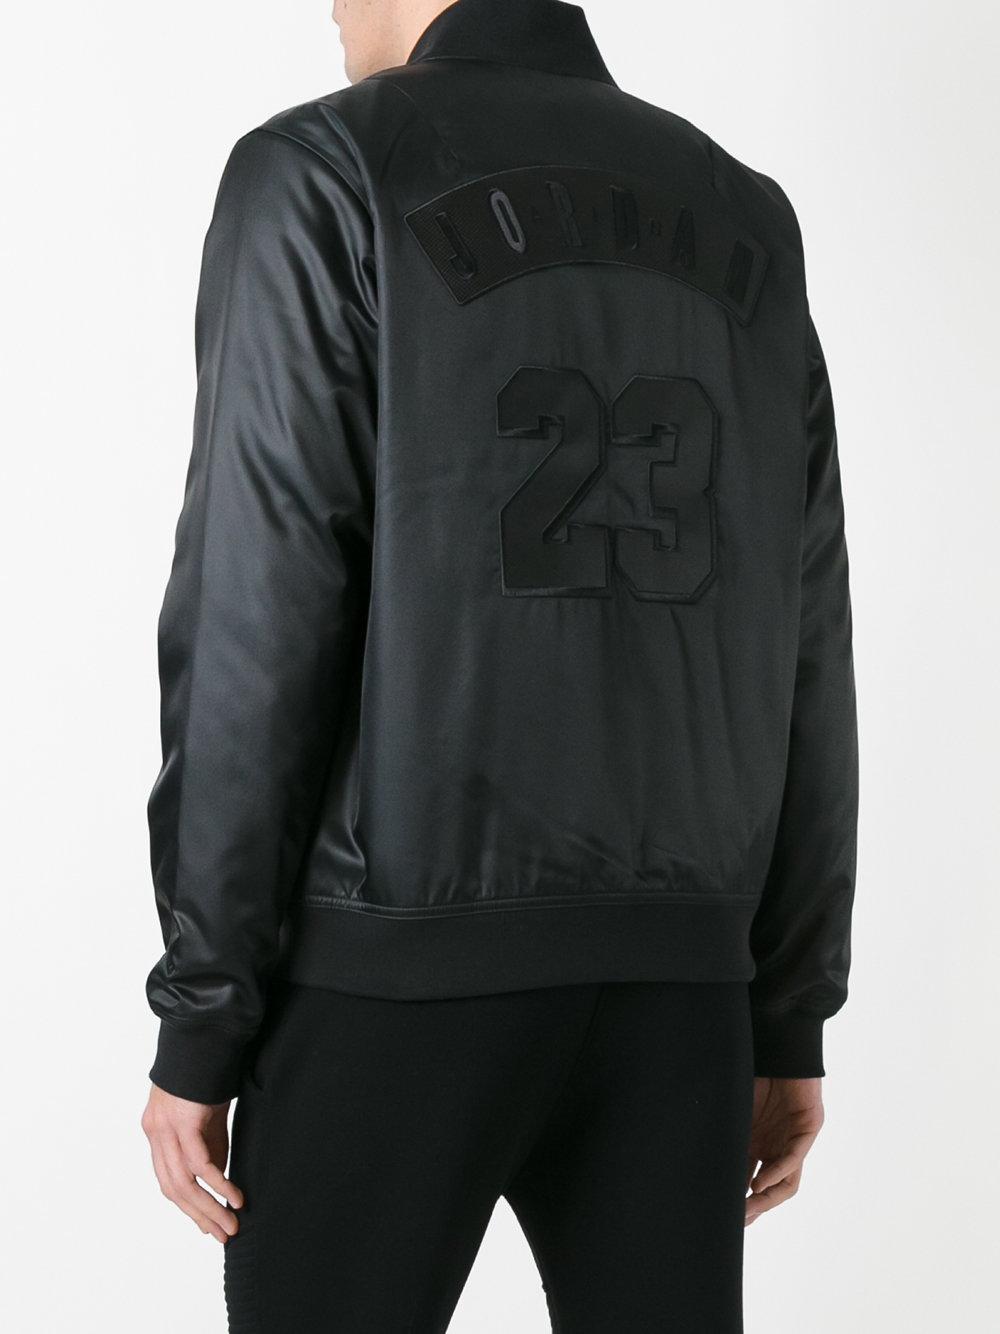 Lyst - Nike Jordan Bomber Jacket in Black for Men